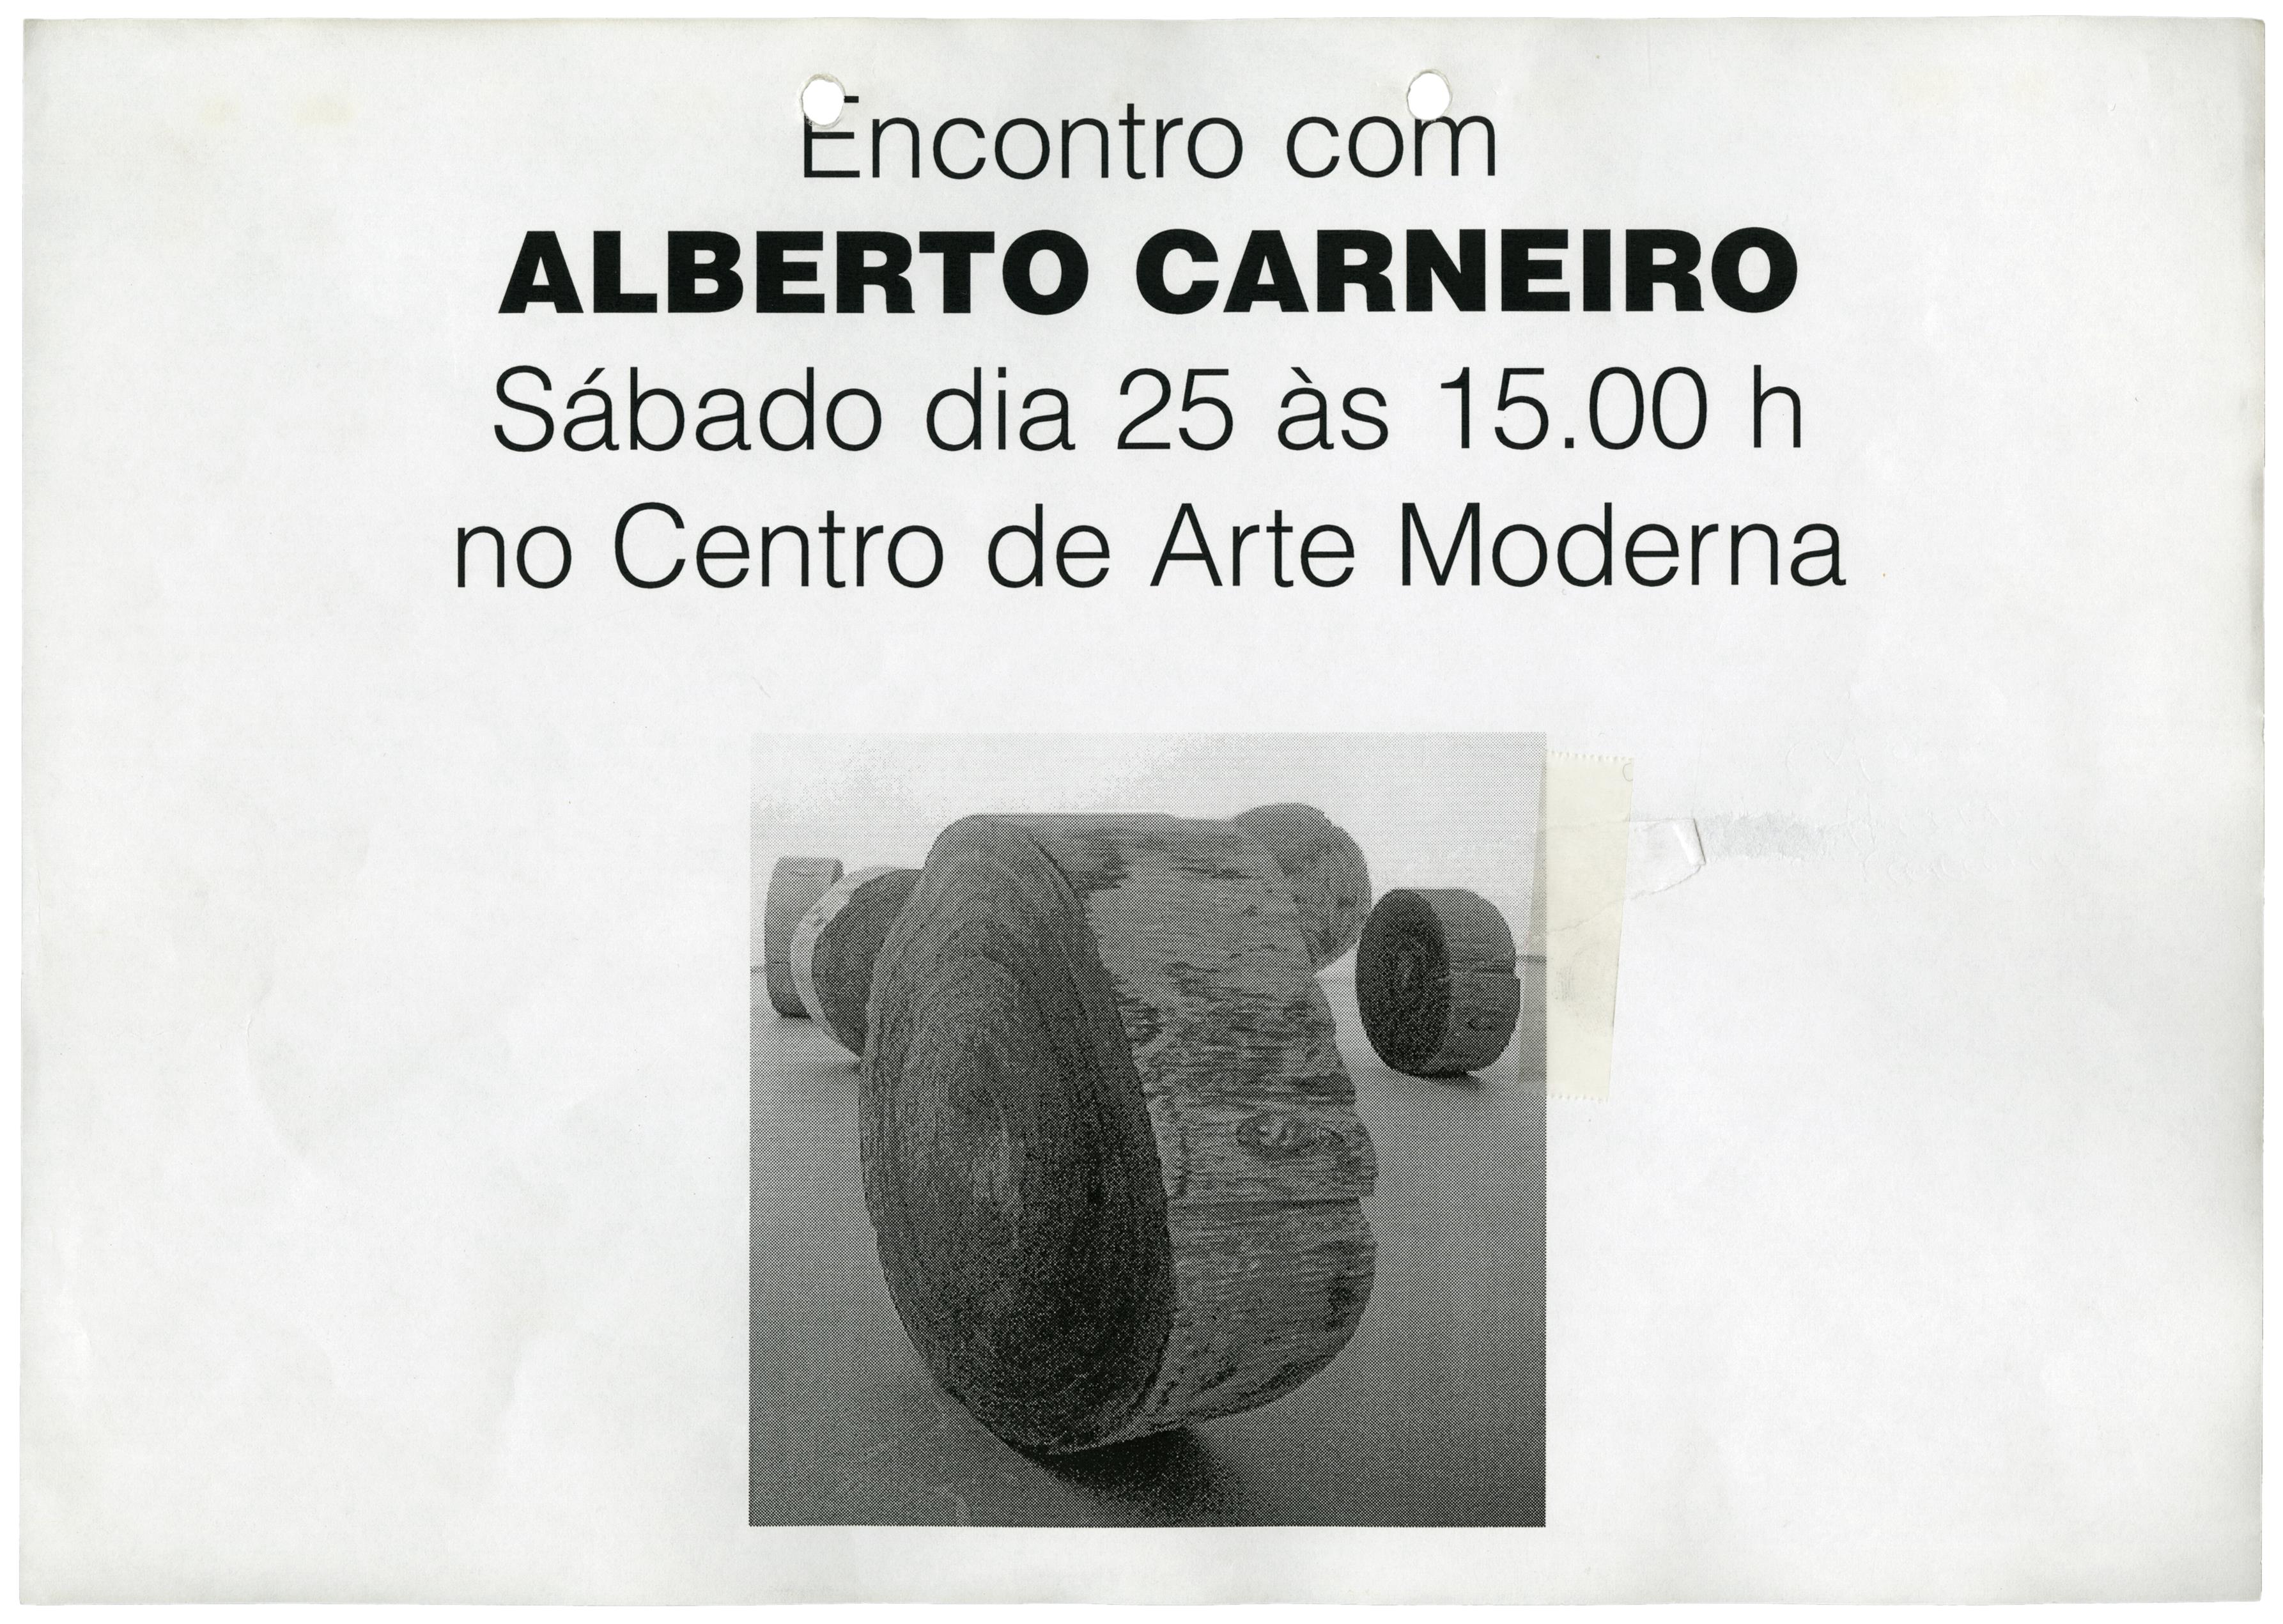 Encontro com Alberto Carneiro. Encontro